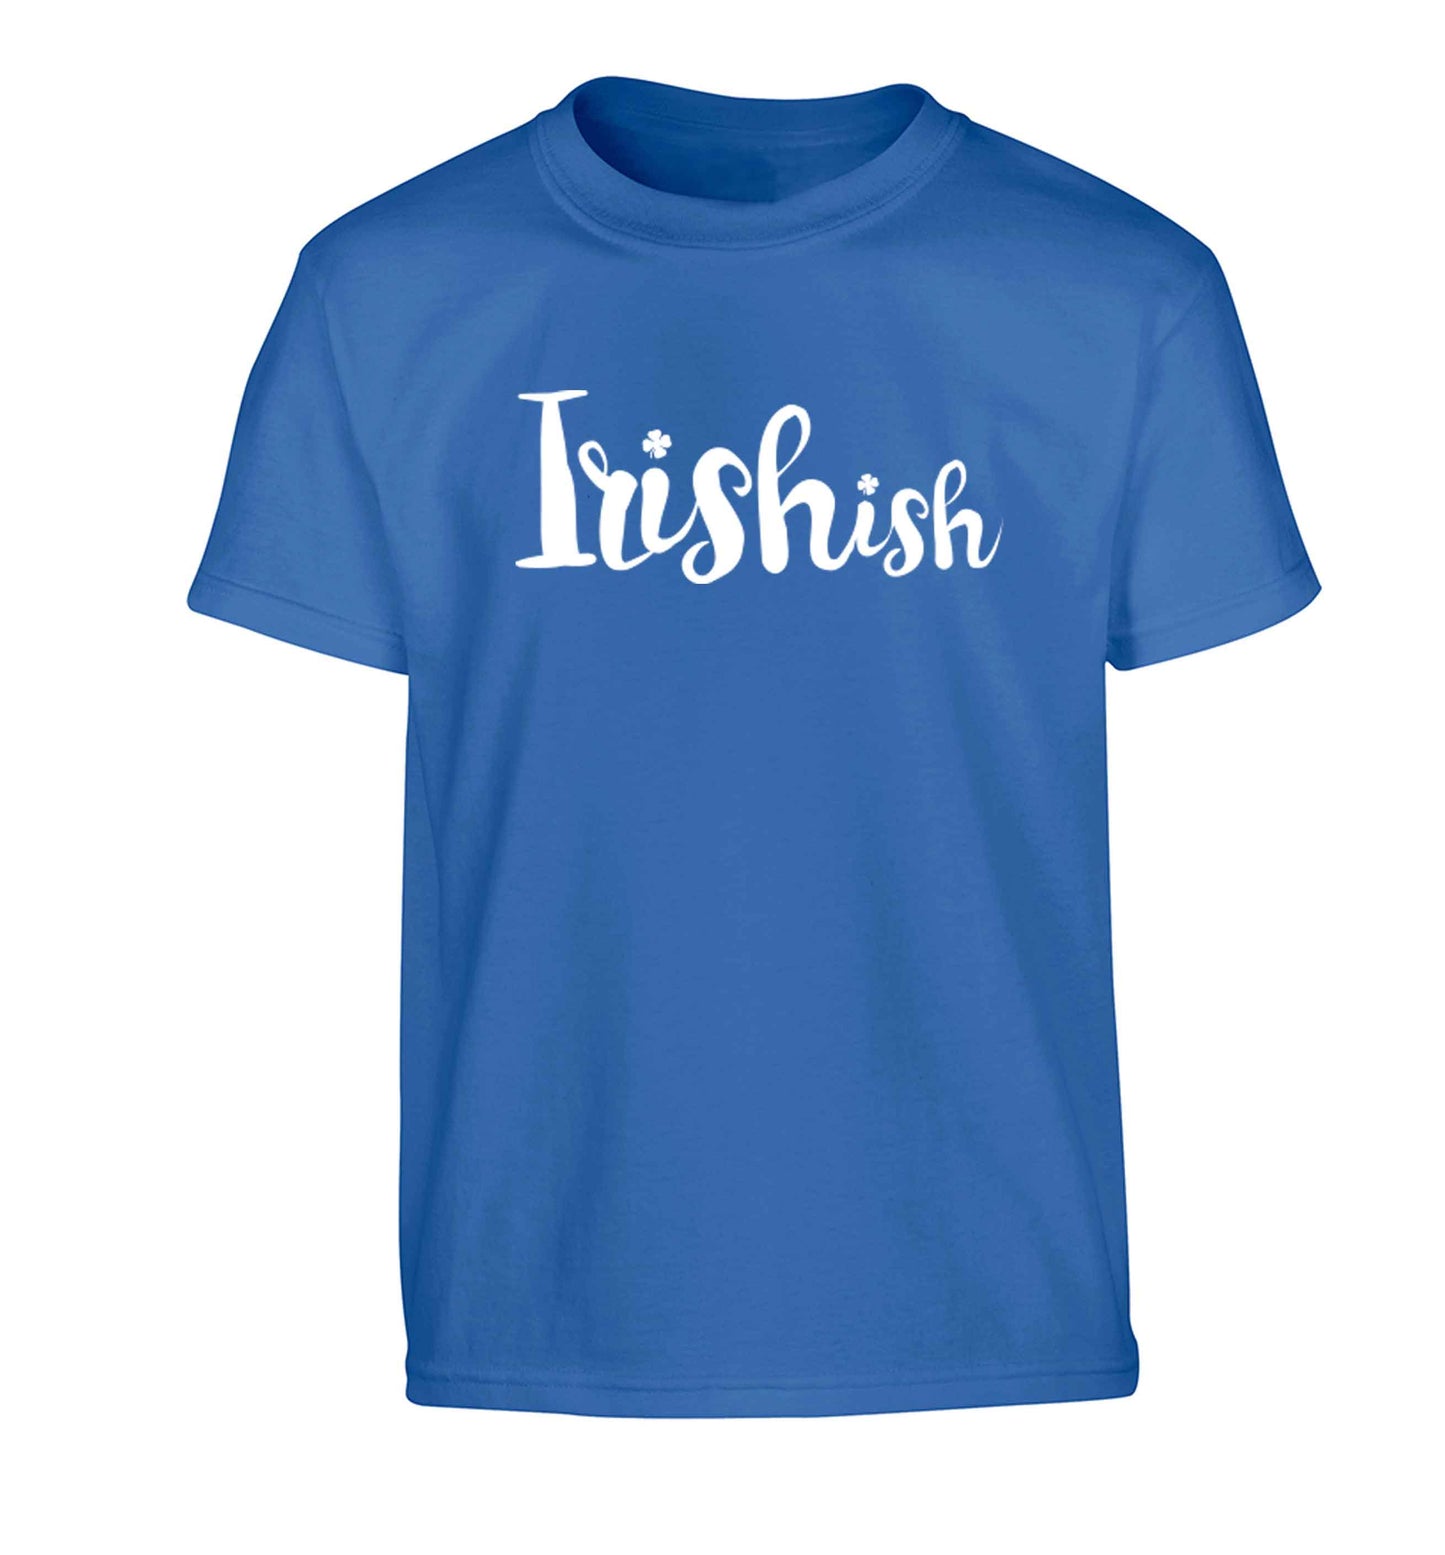 Irishish Children's blue Tshirt 12-13 Years